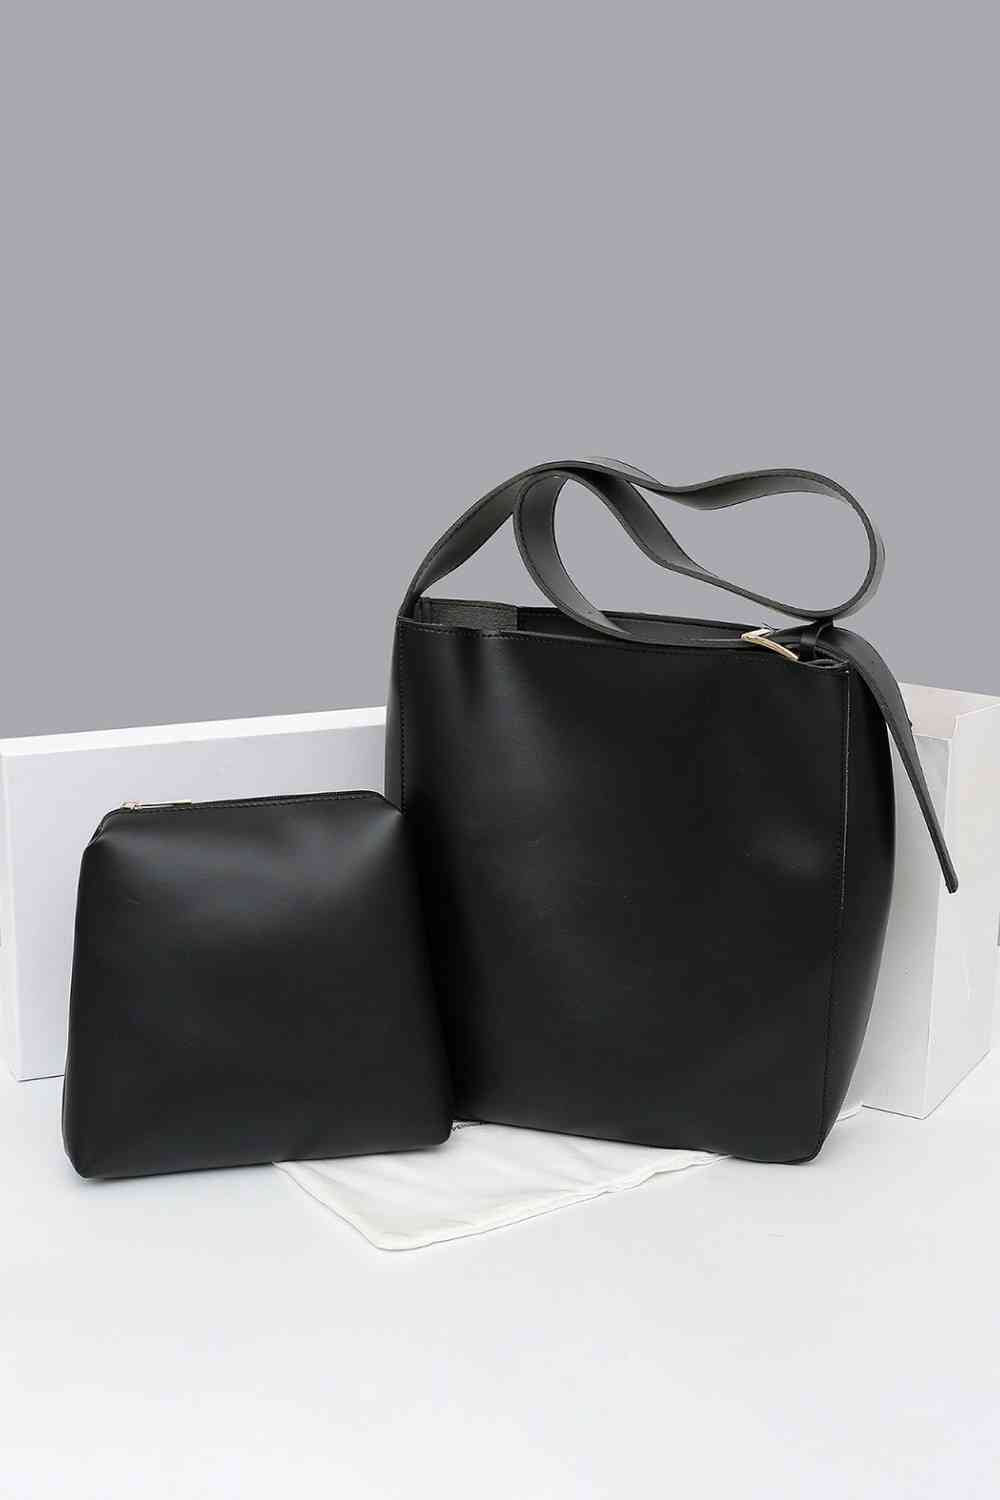 TEEK - Adored 2-Piece Tote Bag Set BAG TEEK Trend Black  